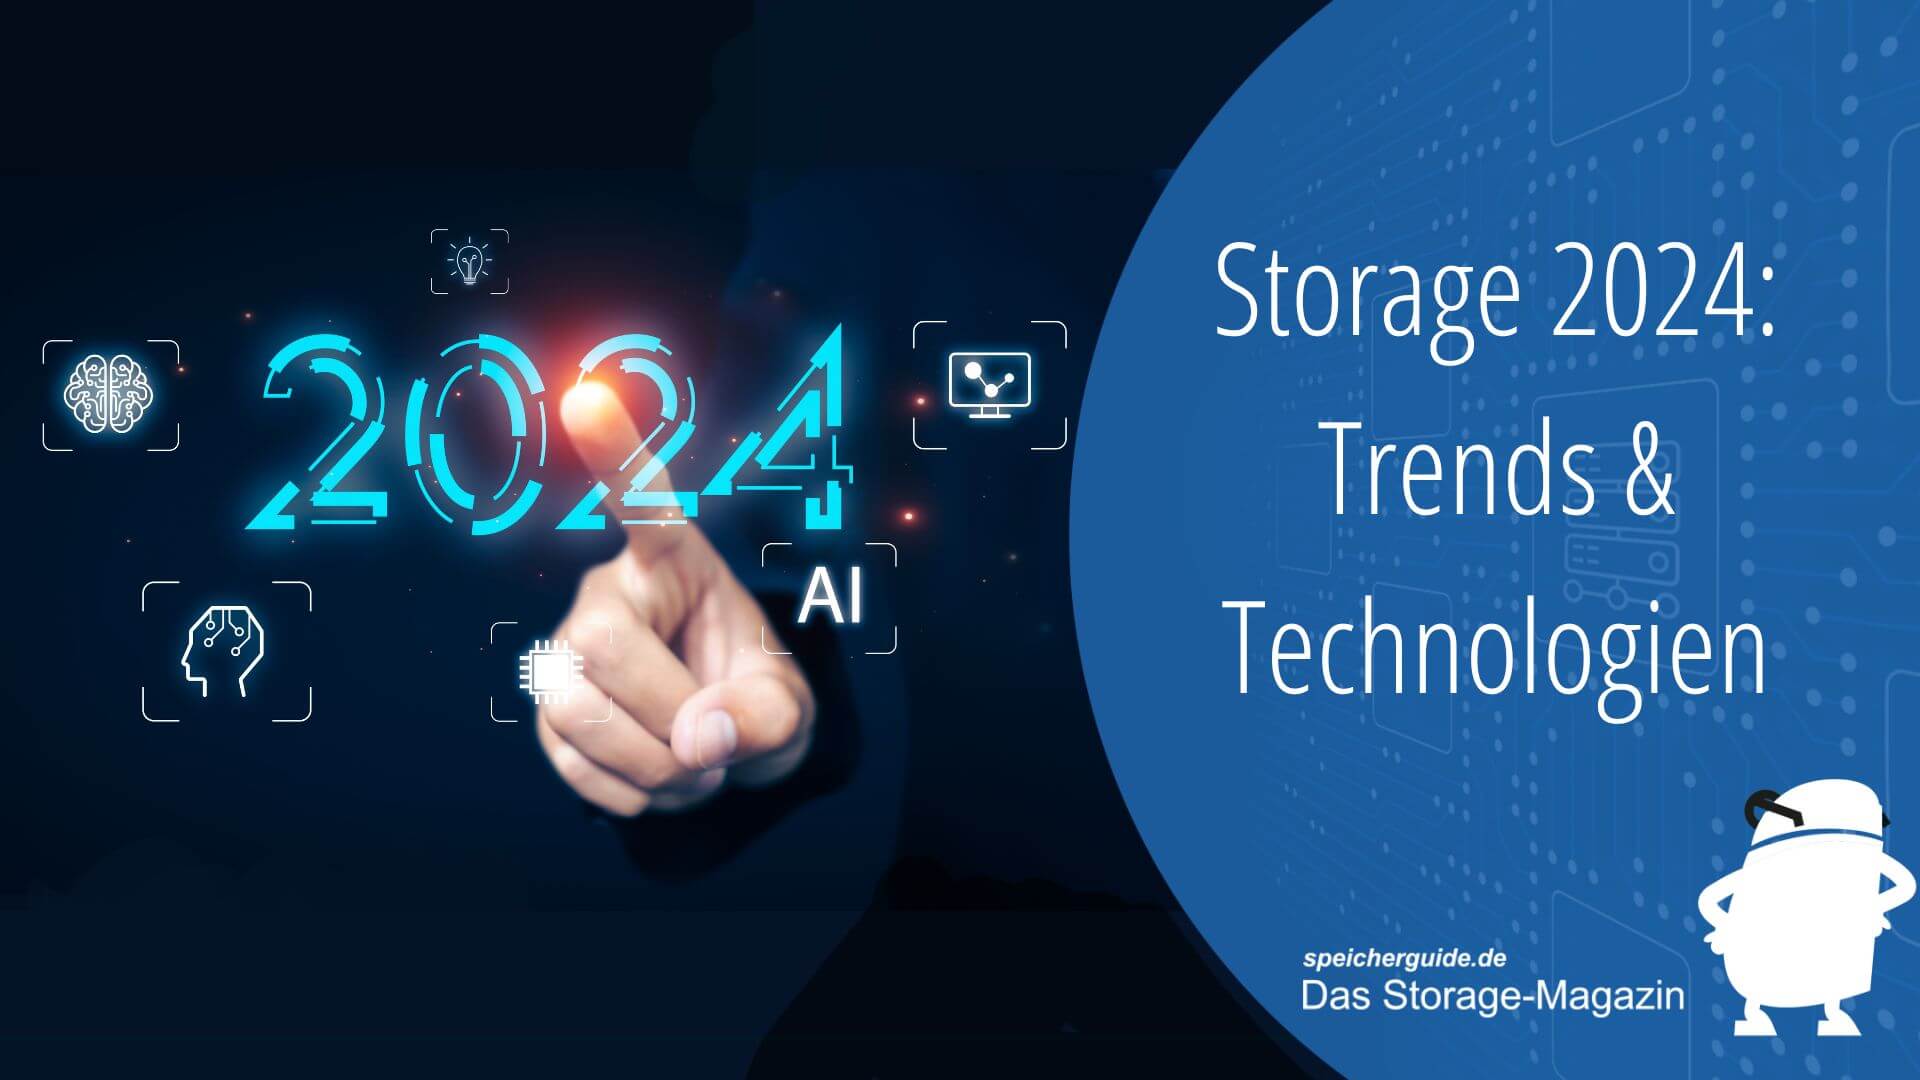 Storage 2024 Trends Technologien 2218034707 